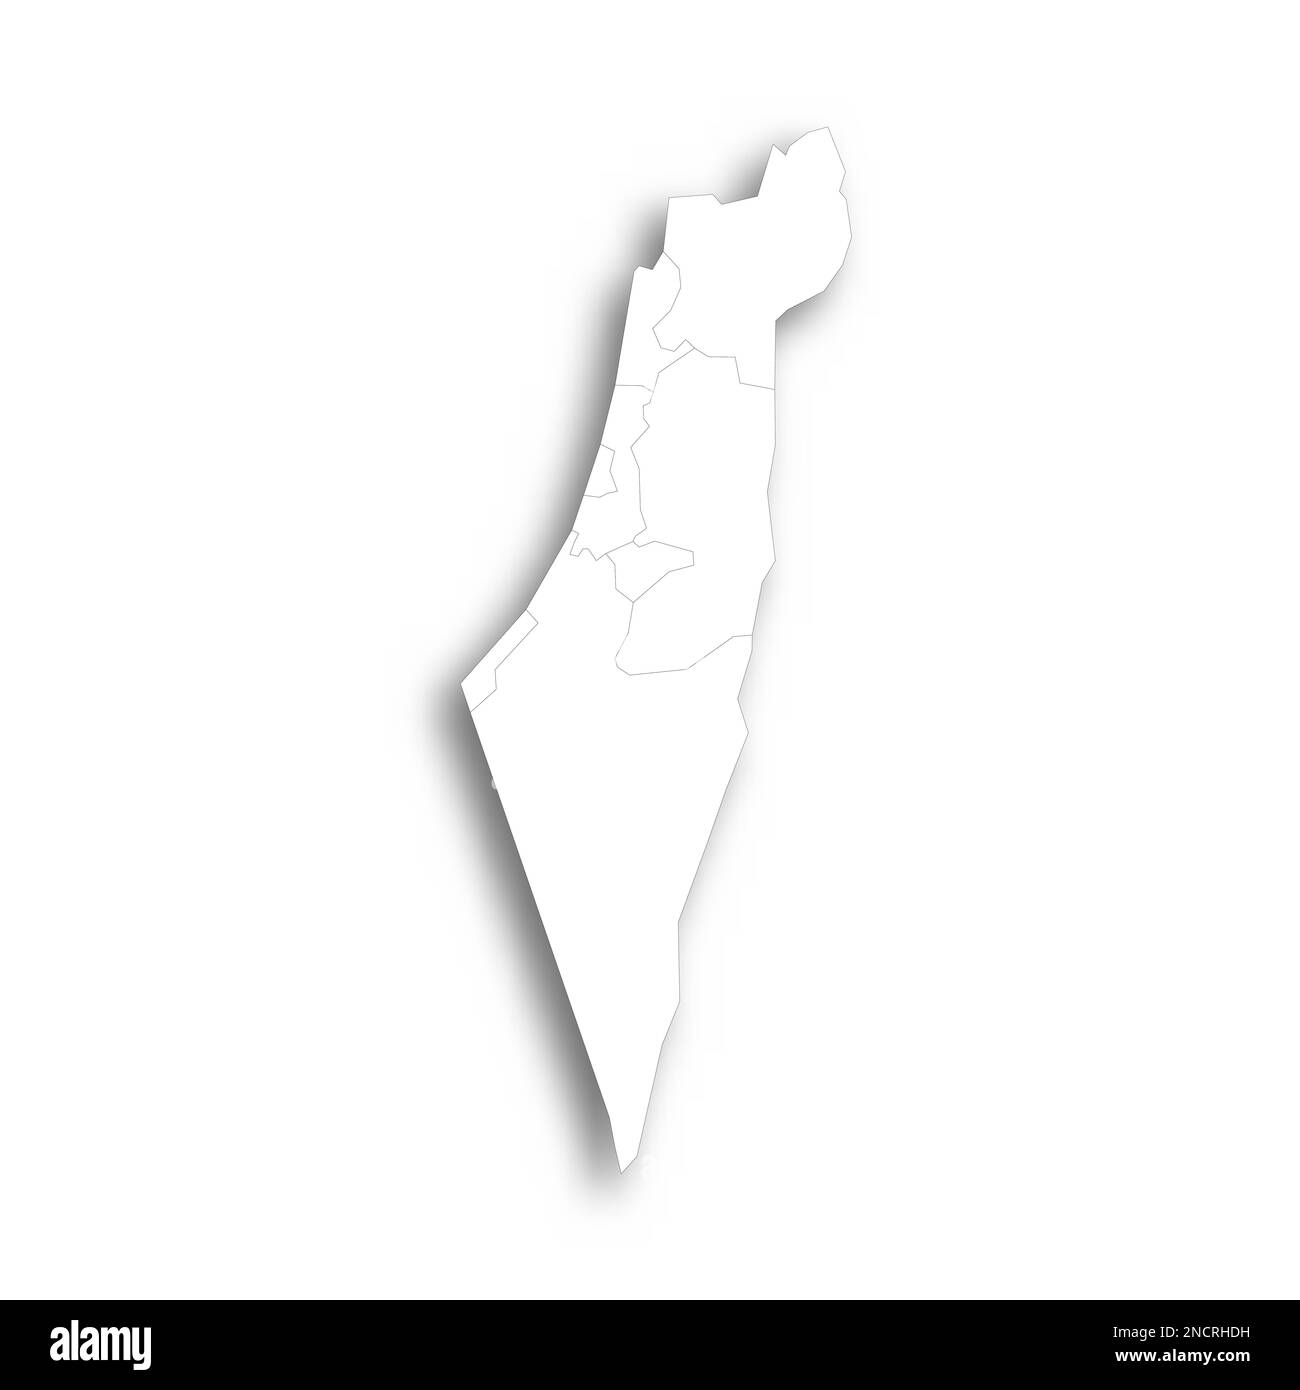 Israele mappa politica delle divisioni amministrative - distretti, striscia di Gaza e Judea e Samaria Area. Mappa bianca piatta con contorni neri sottili e ombre sfumate. Illustrazione Vettoriale